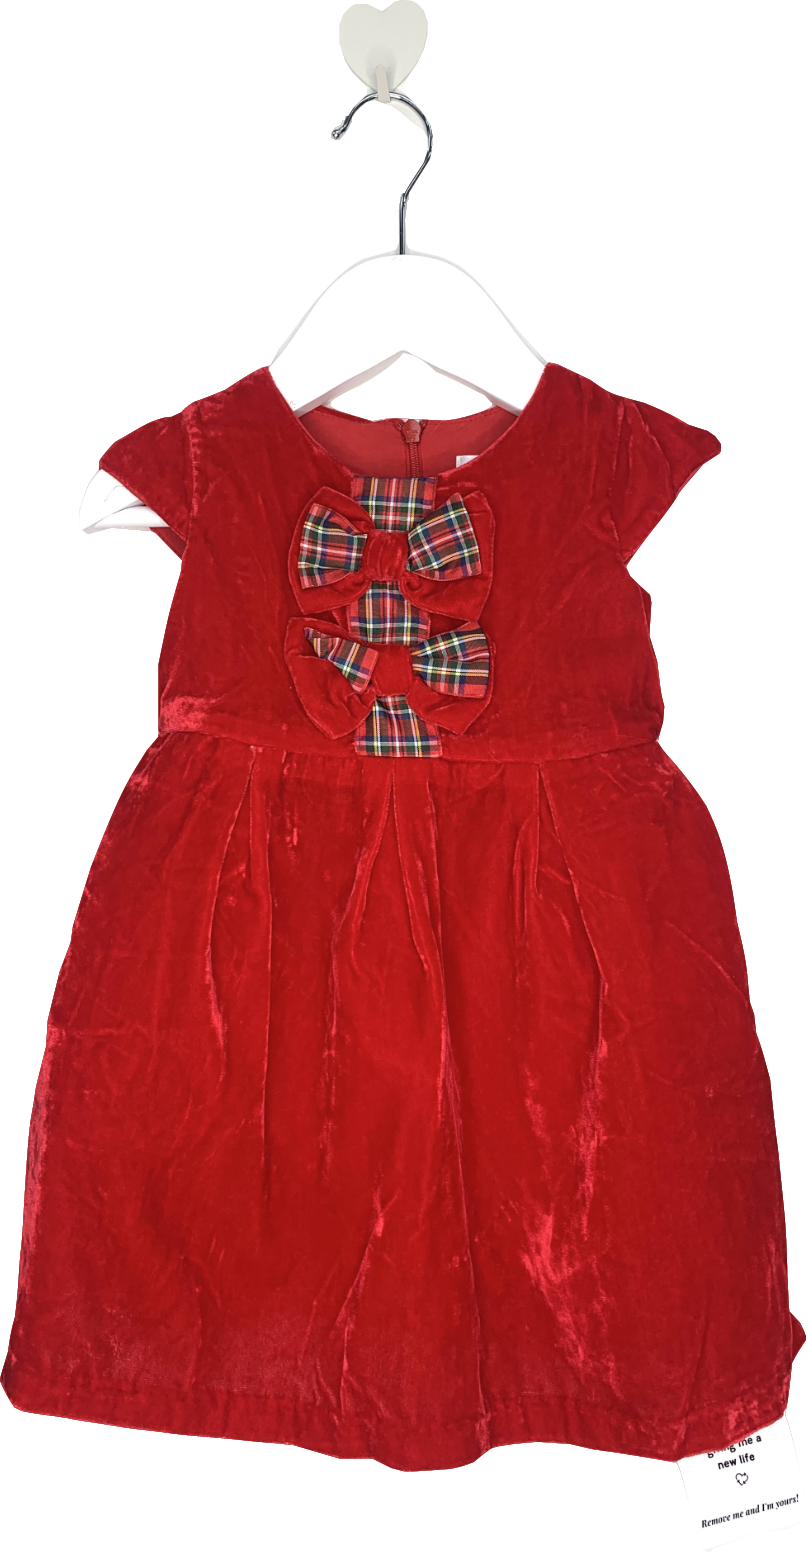 Rachel Riley Red Tartan Bow Velvet Dress 1 Year